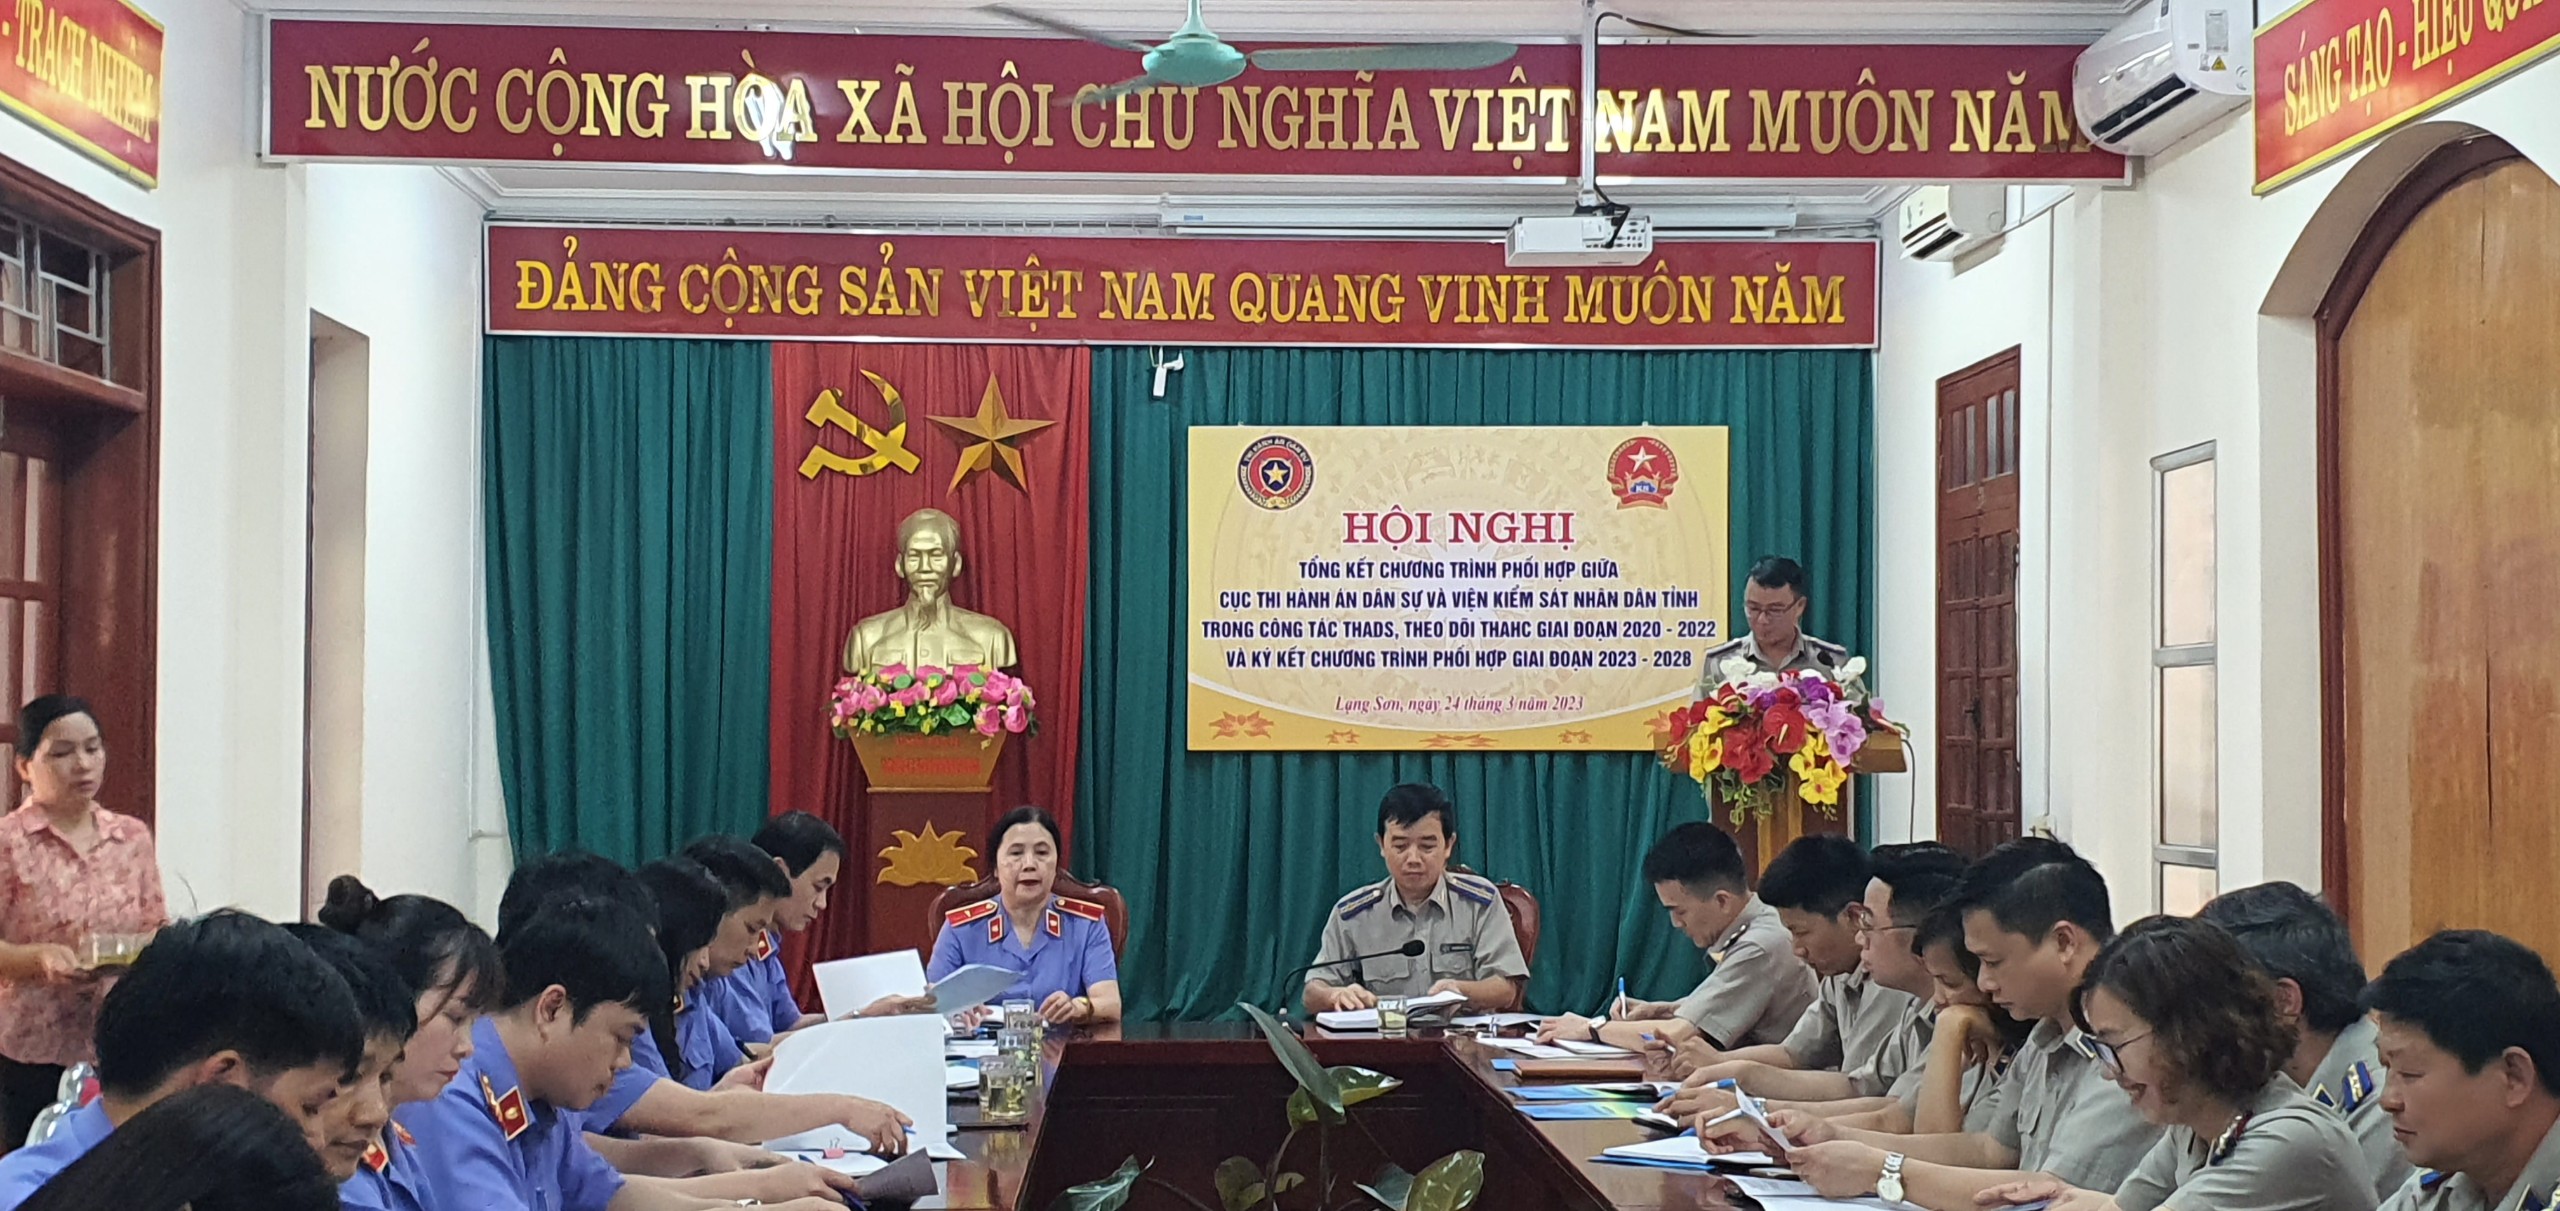 Tổng kết chương trình phối hợp giữa CTHADS tỉnh Lạng Sơn và VKSND tỉnh Lạng Sơn 2023-2028